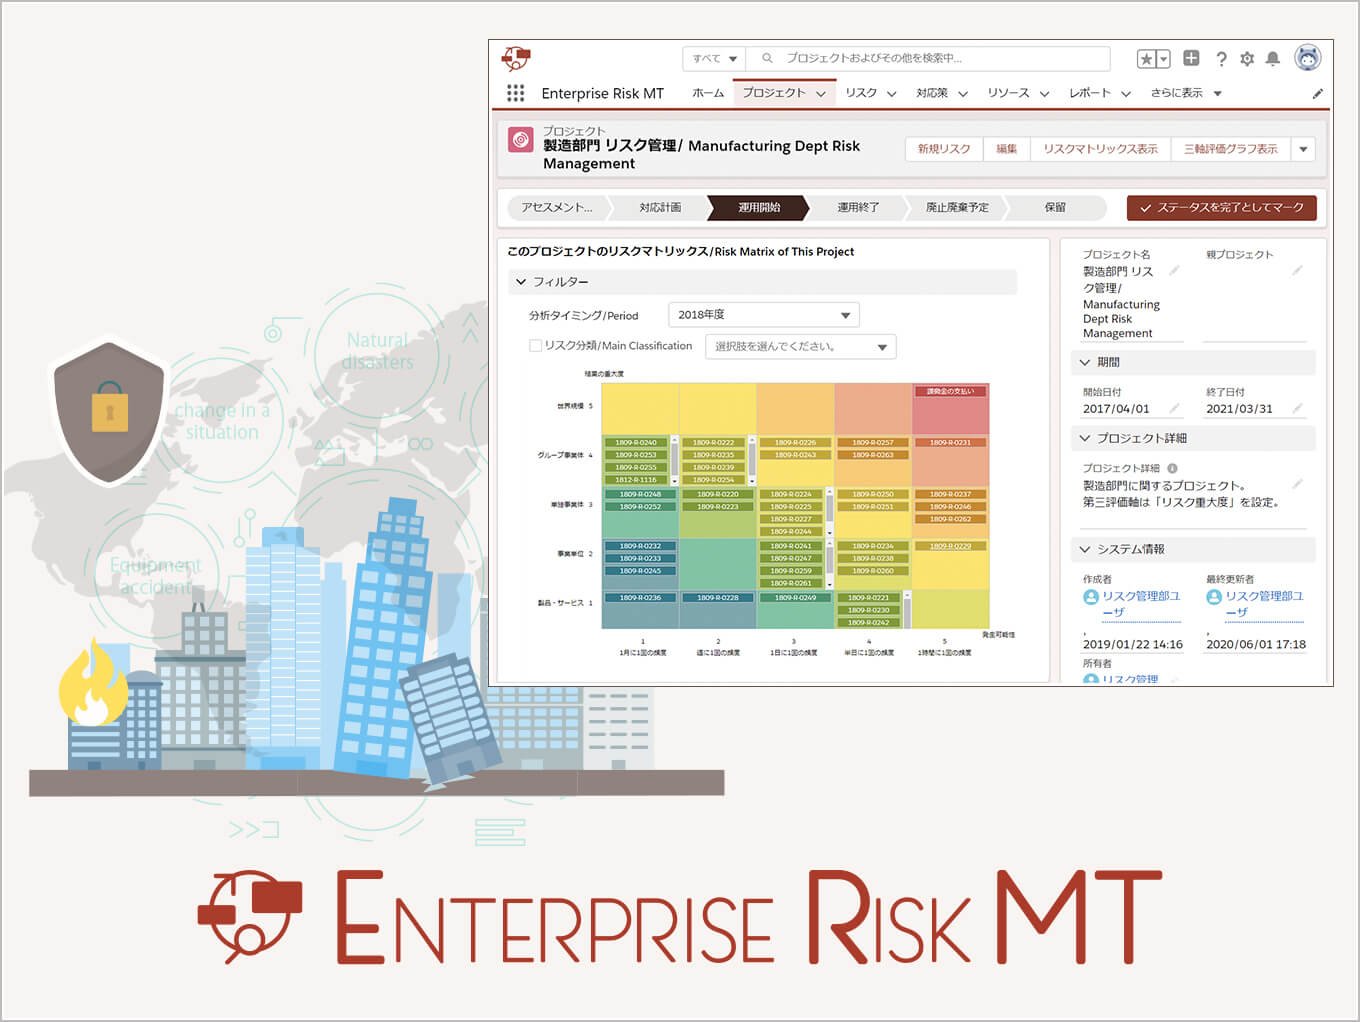 リスクマネジメントを DX する Enterprise Risk MT 活用セミナー